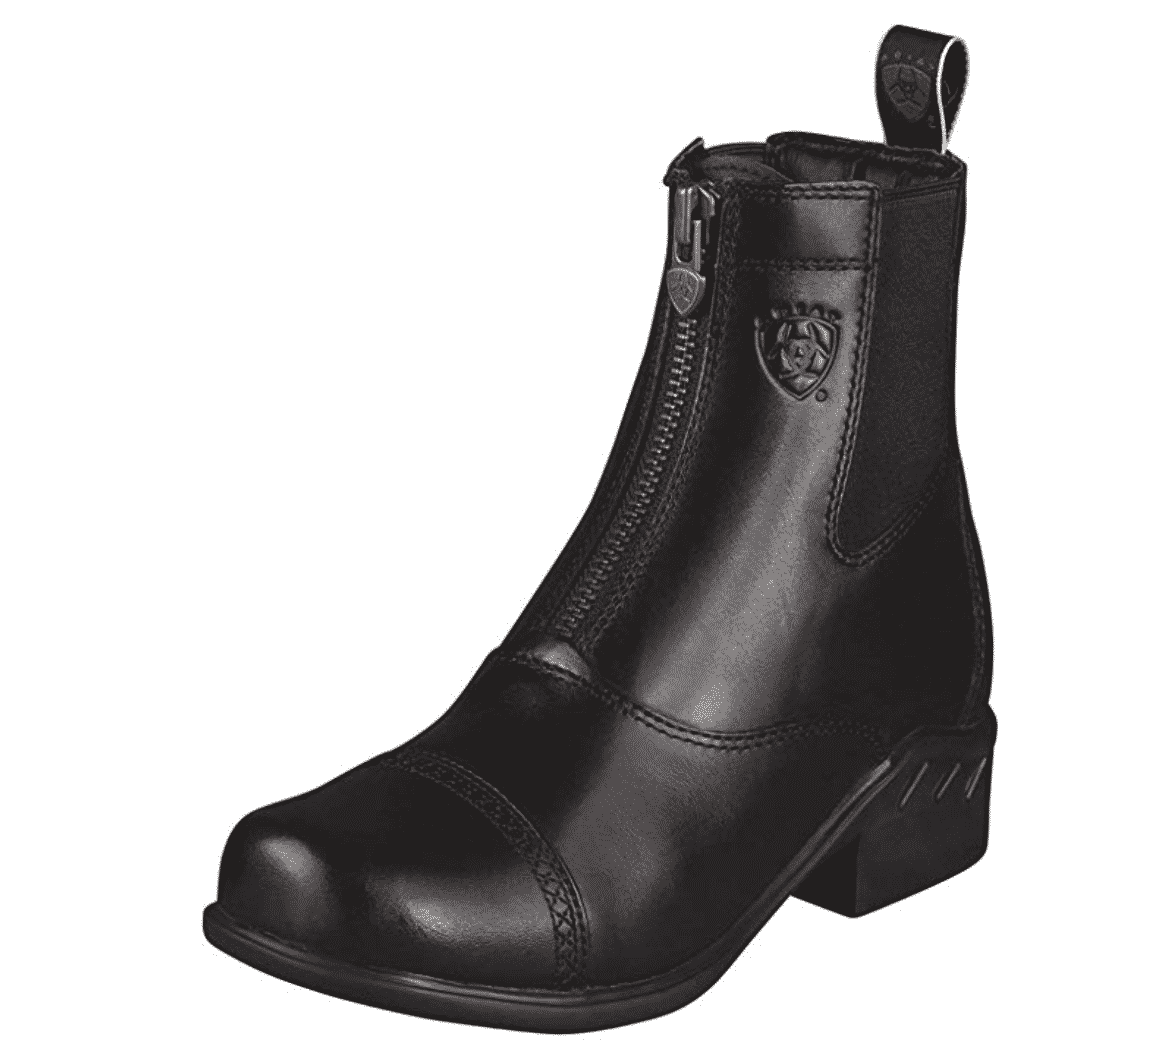 Ariat Women's Paddock Boots - Heritage Zip Boot